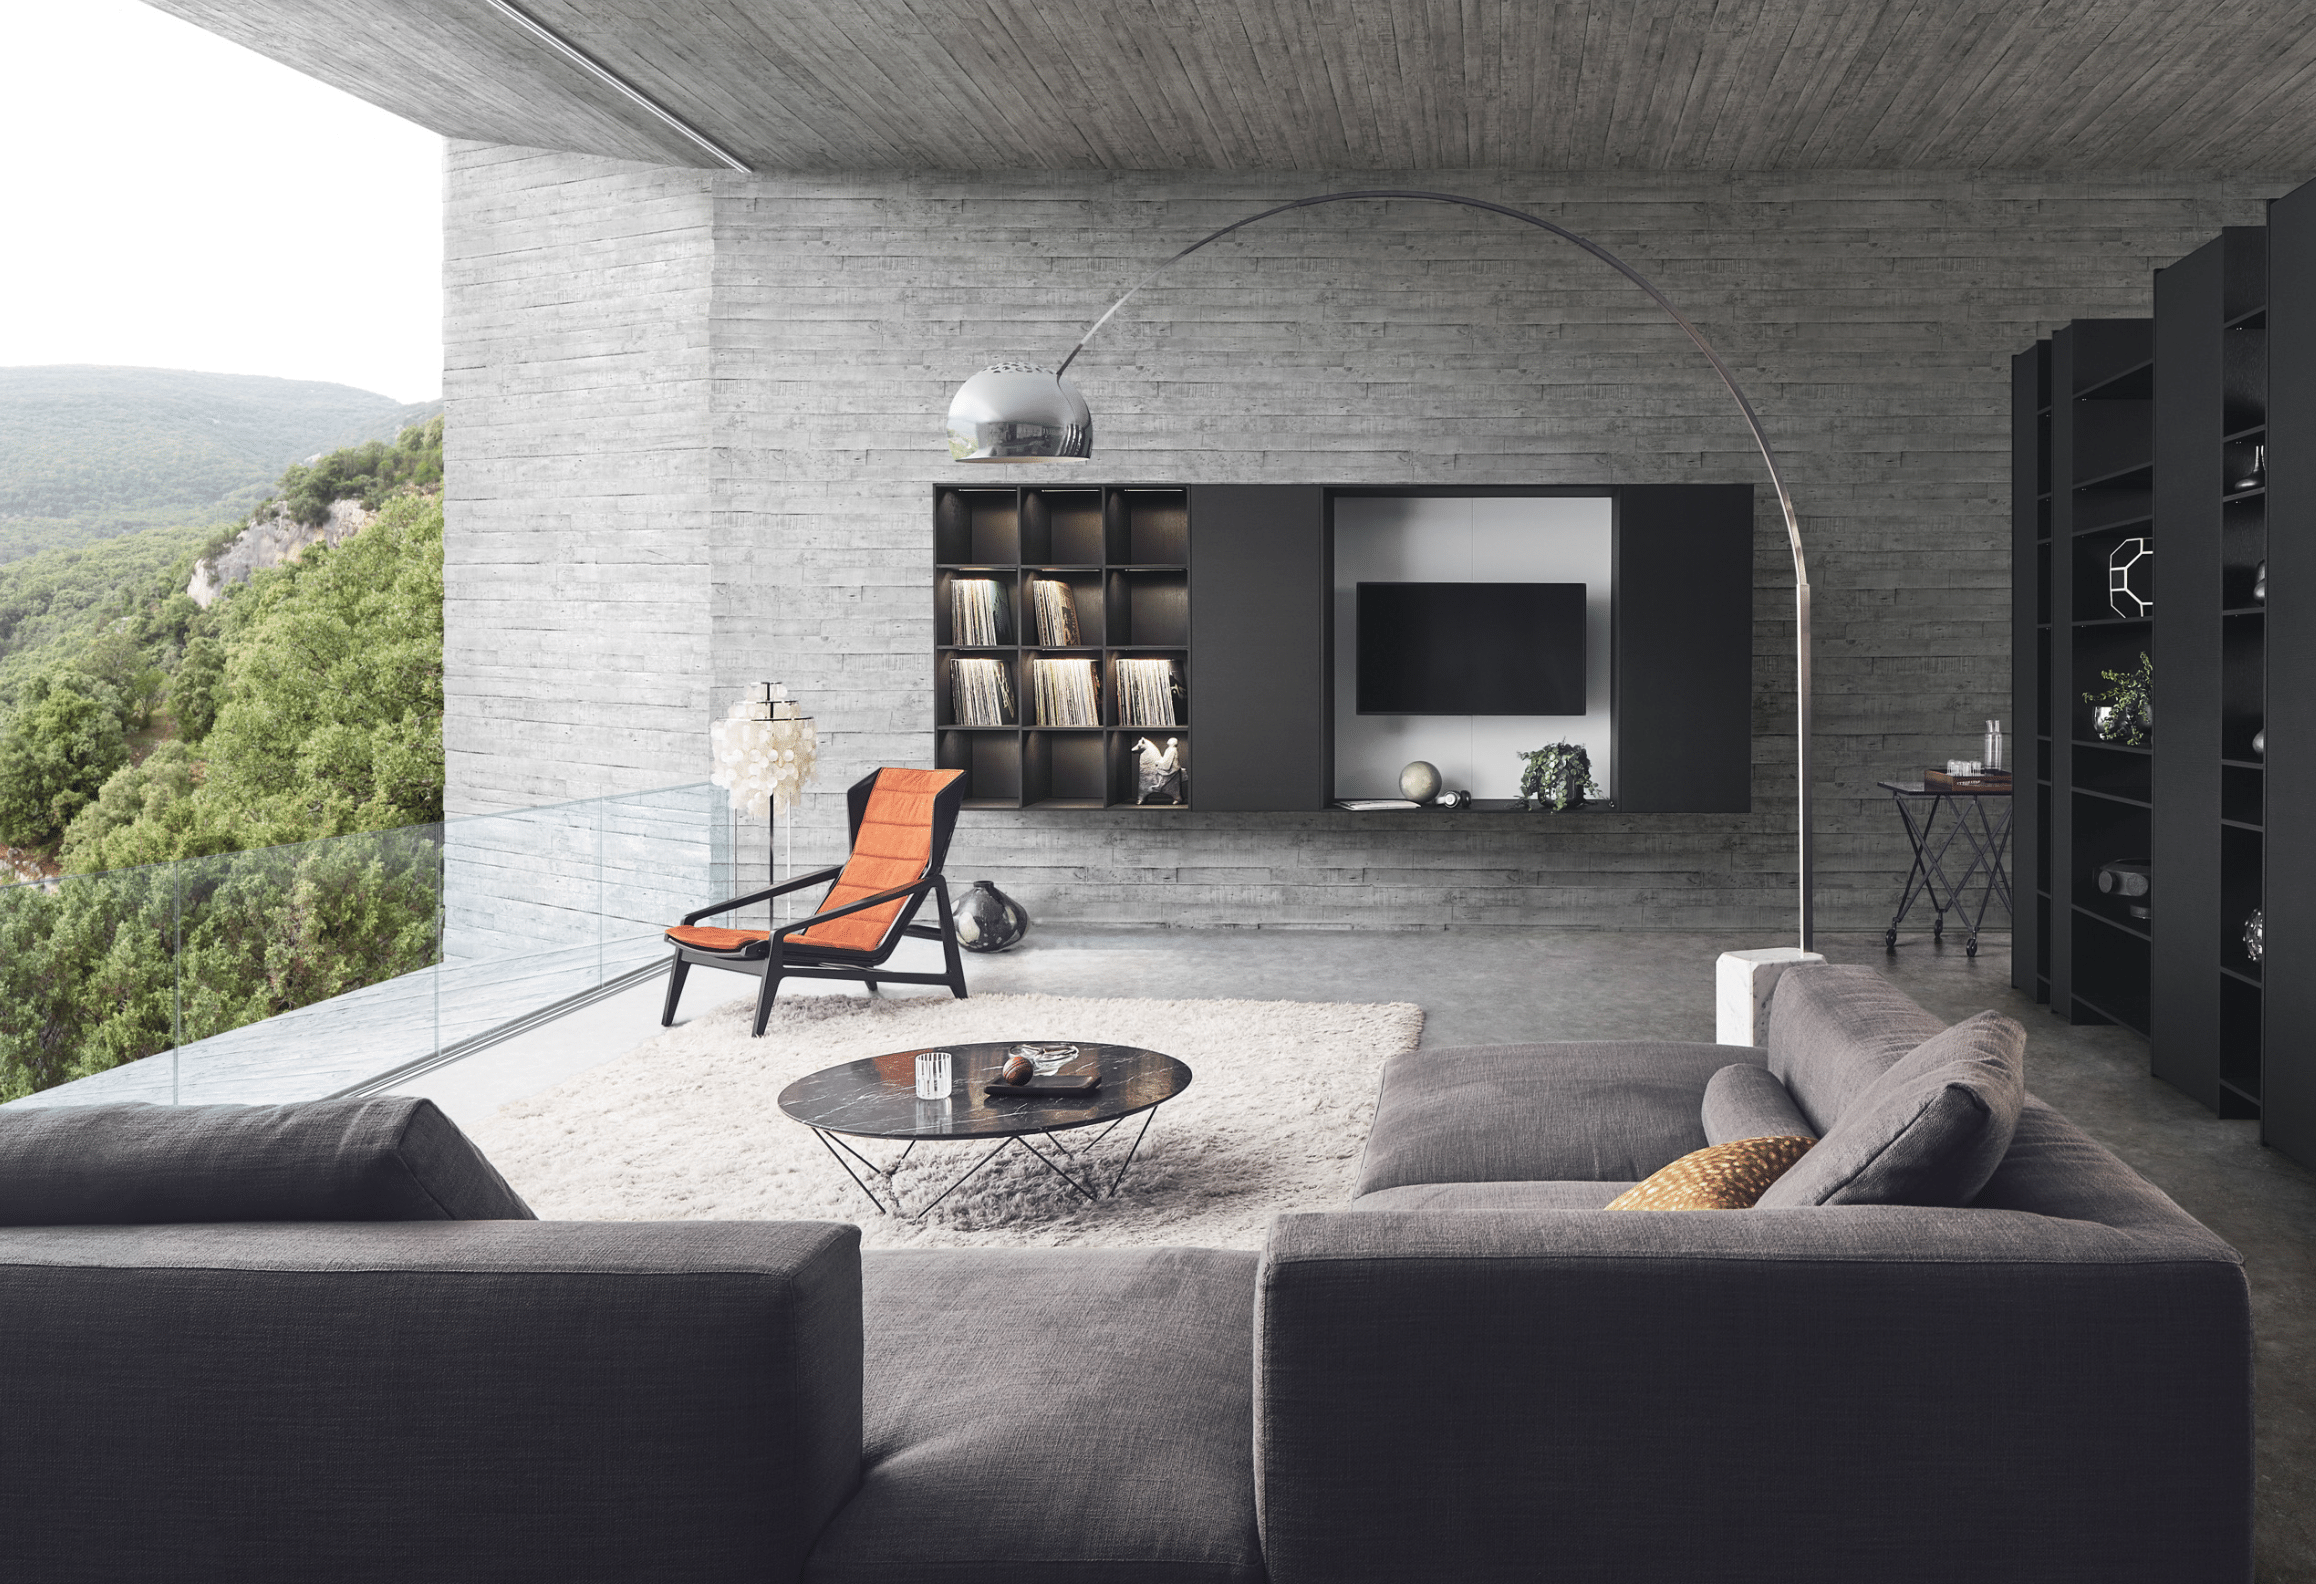 WOHNHAUS Grill & Ronacher zeigt ein Wohnzimmer von LEICHT Küche in dunklem Holz mit Wandboard und freistehendem Raumtrenner.